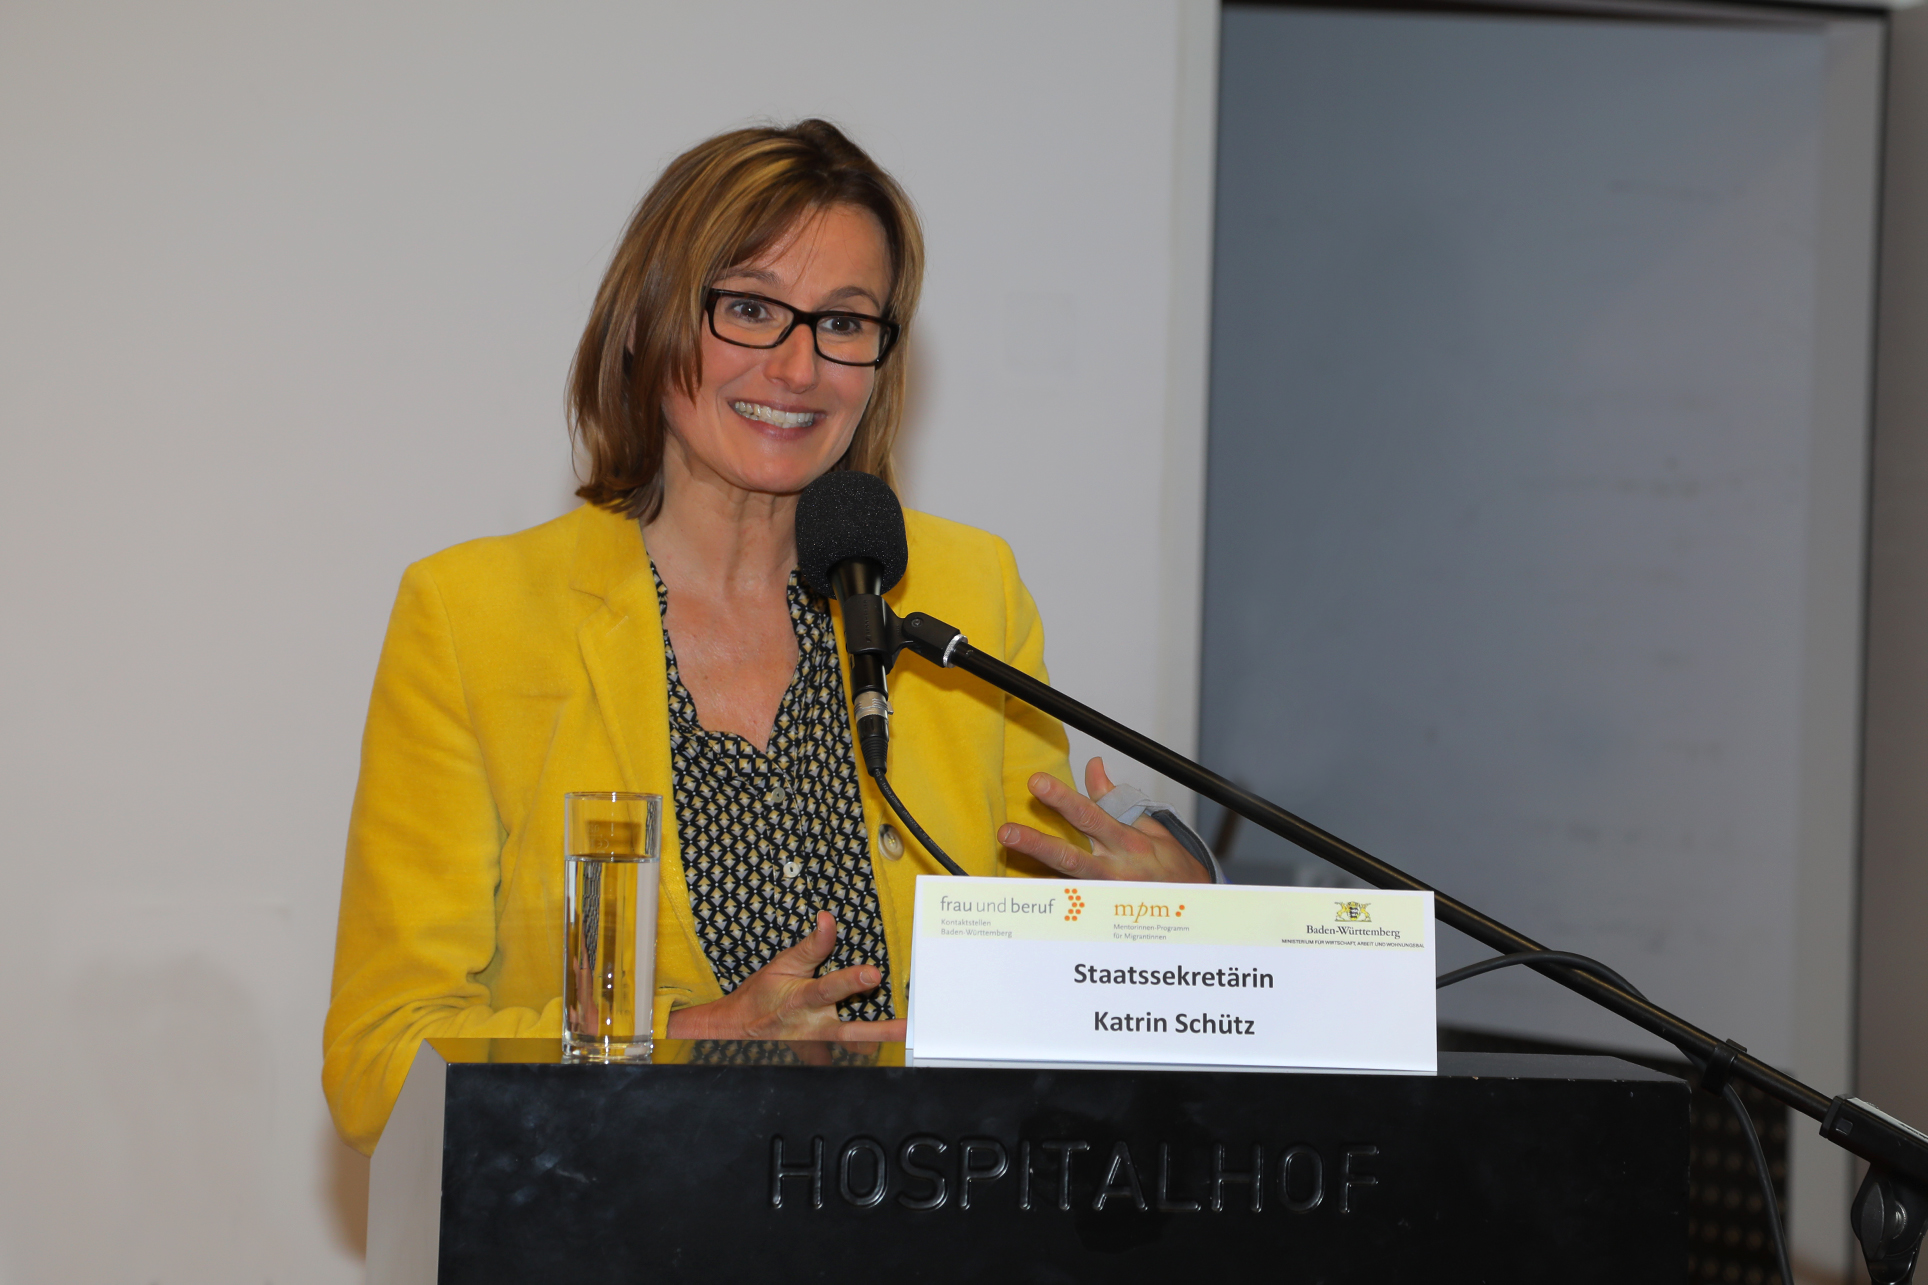 Staatssekretärin Katrin Schütz steht auf dem Podium und spricht in ein Mikrofon. Sie trägt einen gelben Blazer.